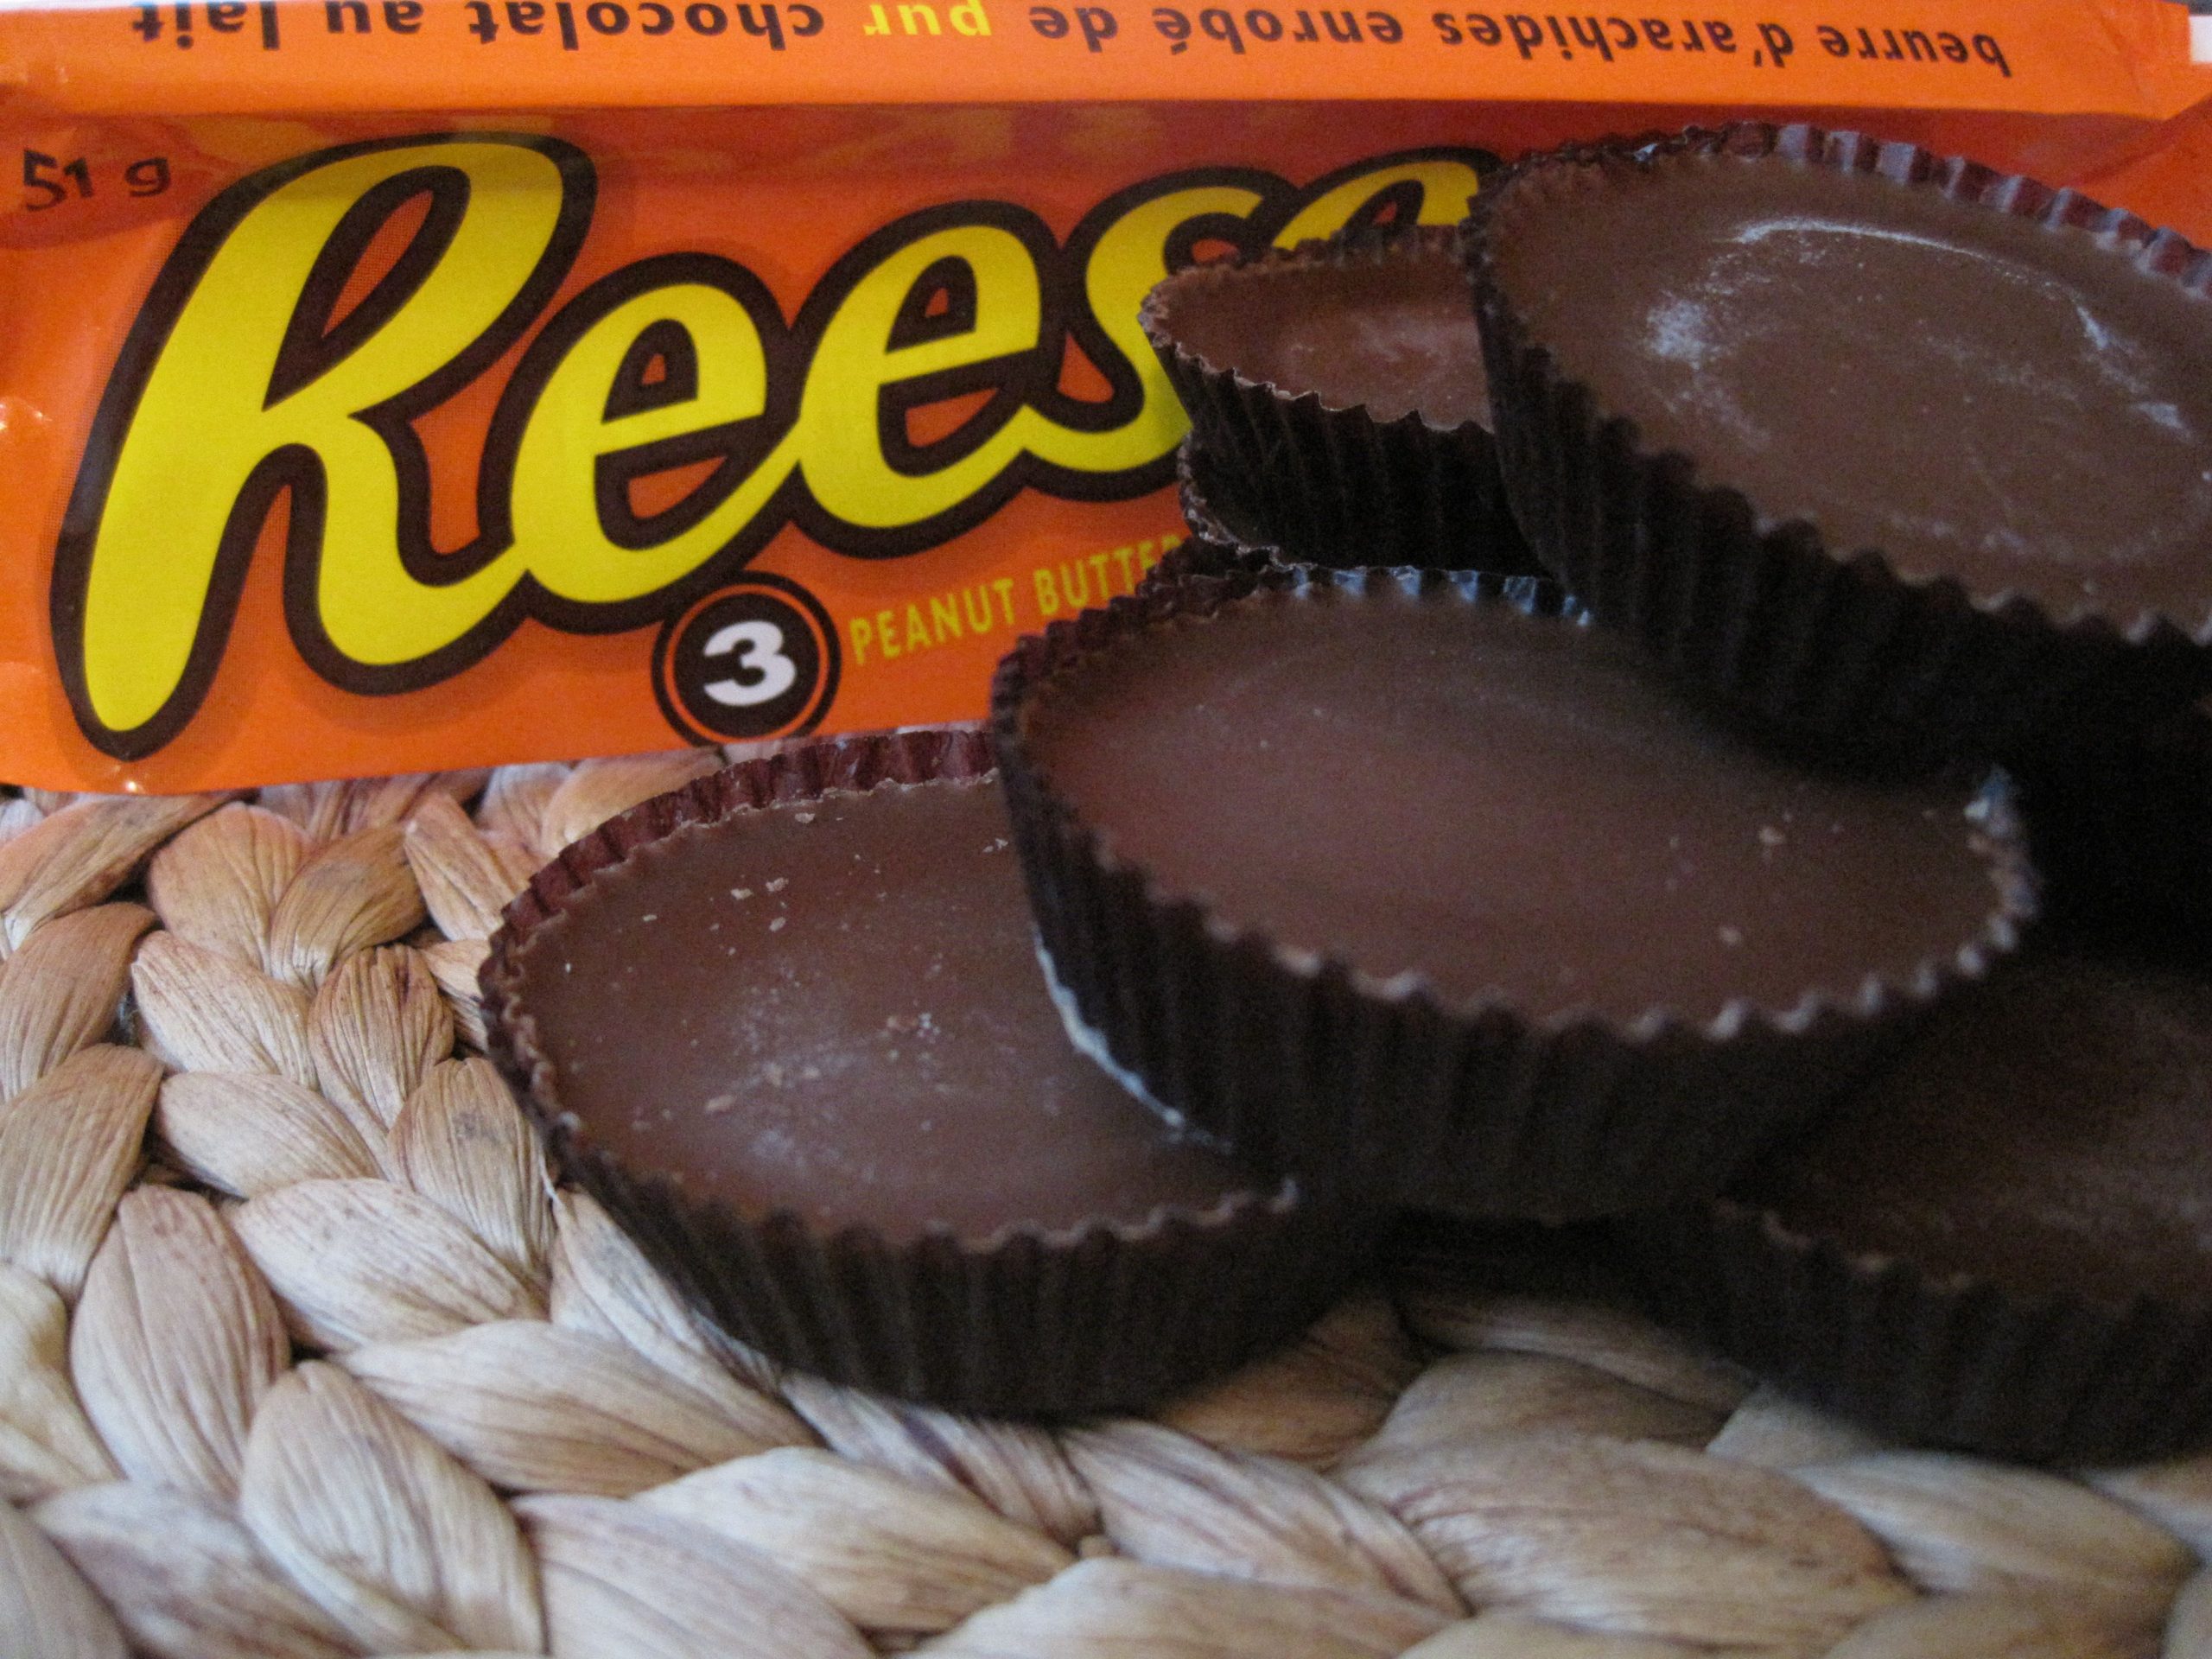 حقائق لا تعرفها عن شكولاتة ريزس “Reese’s” أشهر حلوى أمريكية